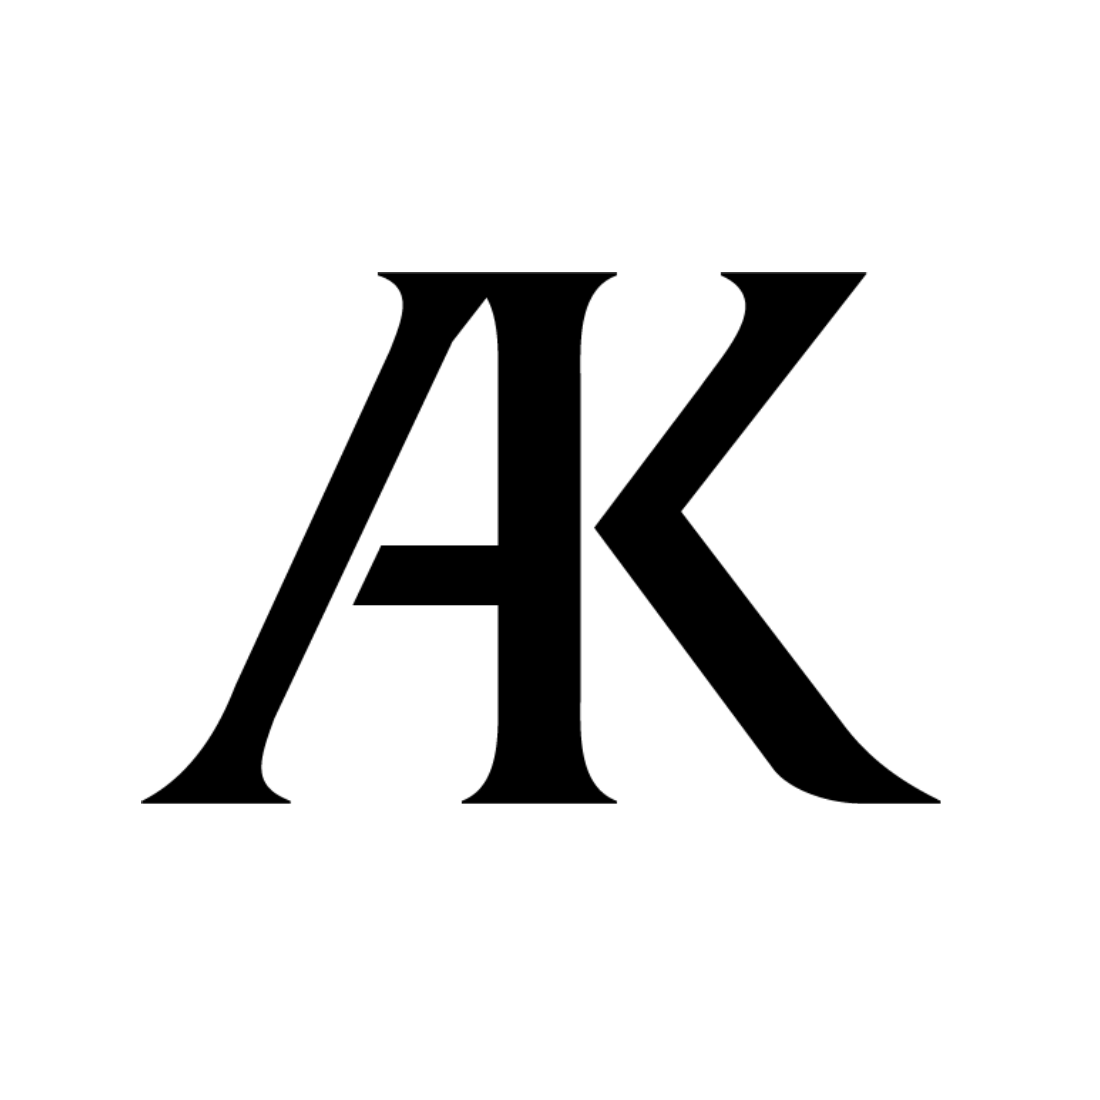 ビジネス成功のロゴデザインA&K様ロゴ